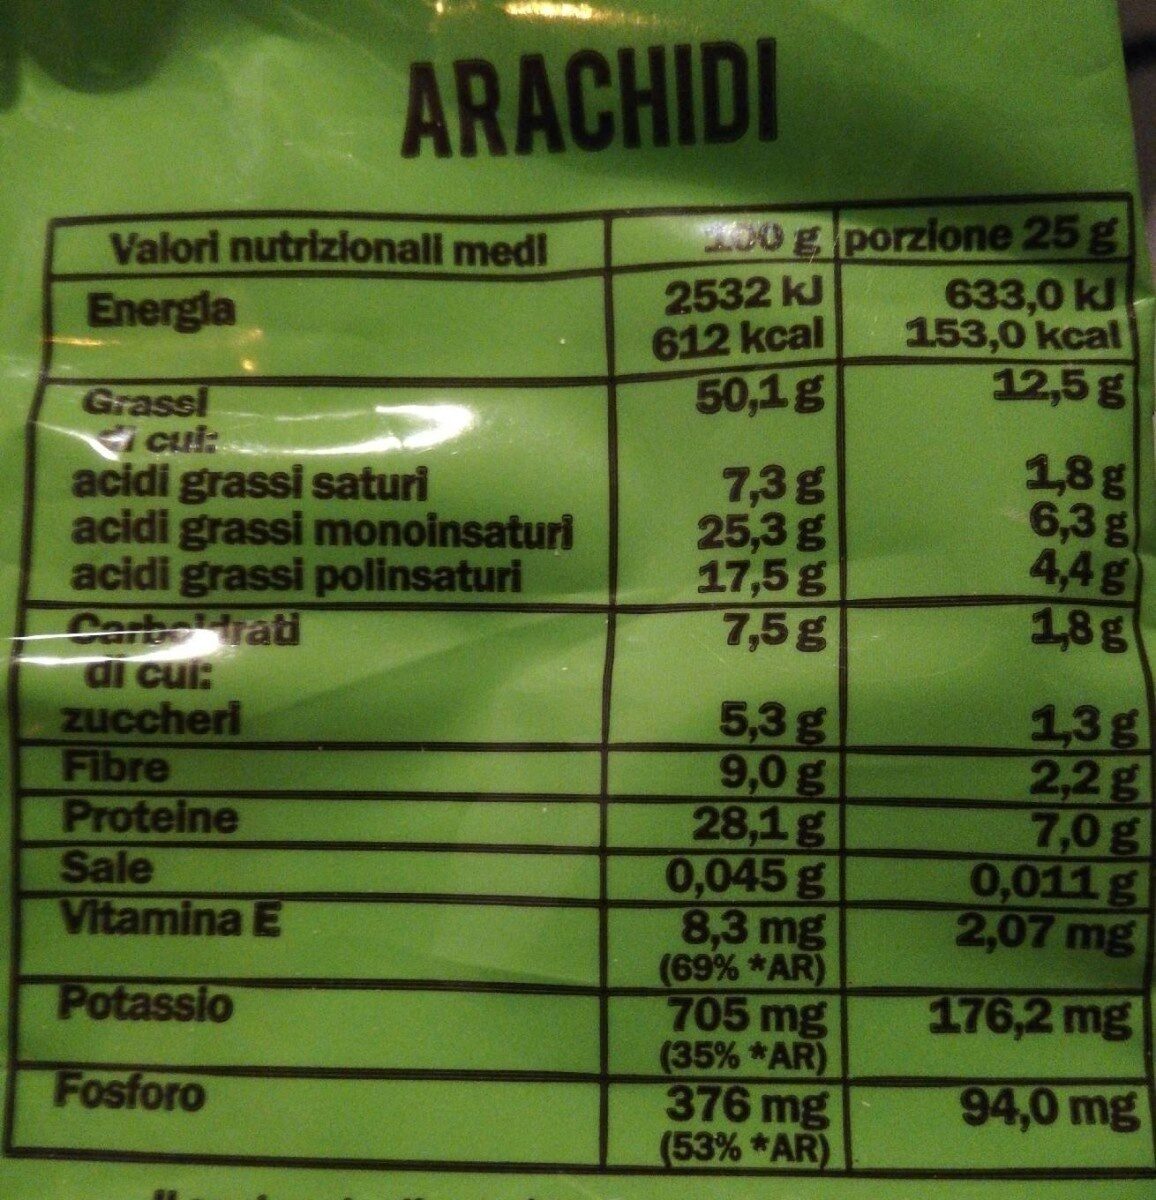 arachidi - Valori nutrizionali